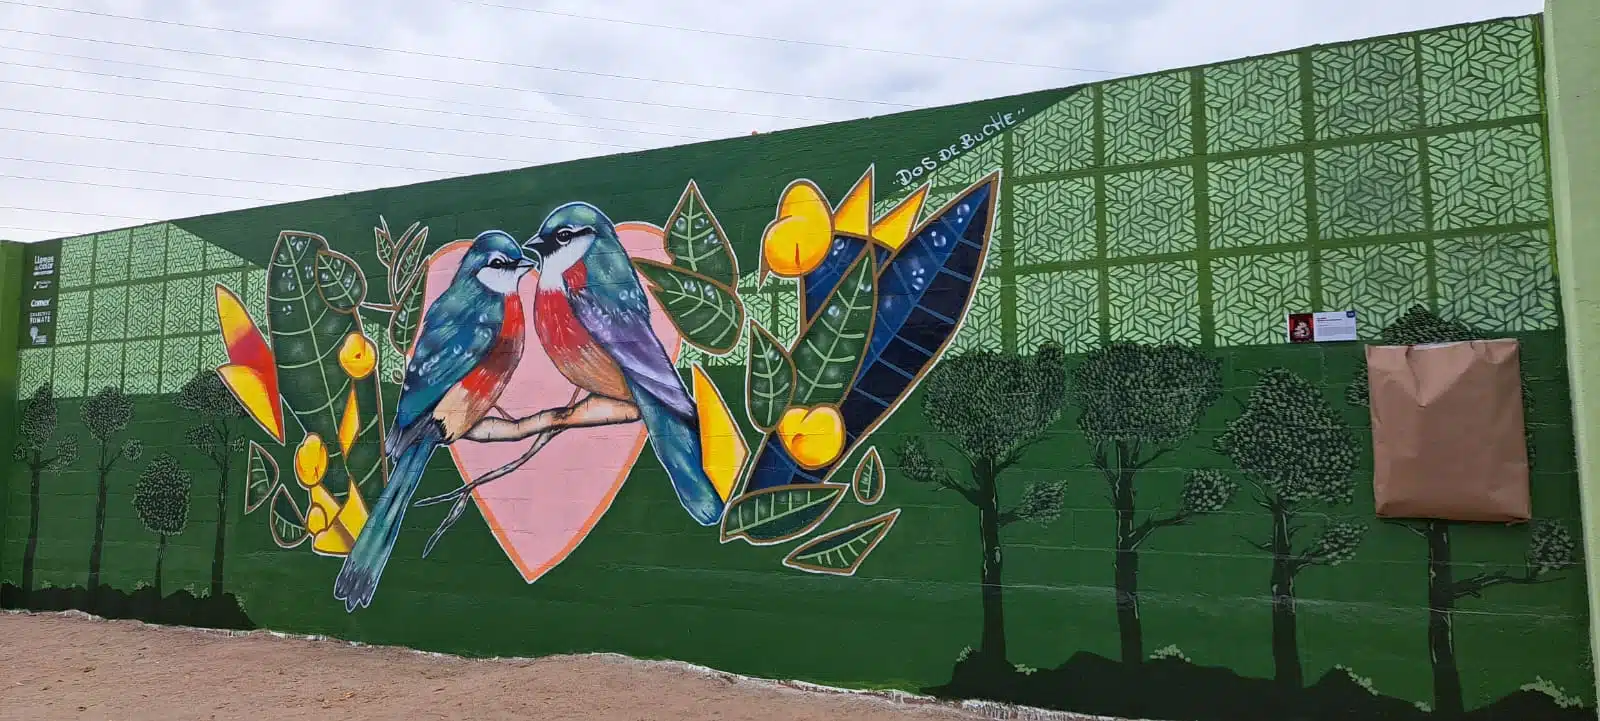 Inauguran murales artísticos con rueda d prensa " Llaves de color"